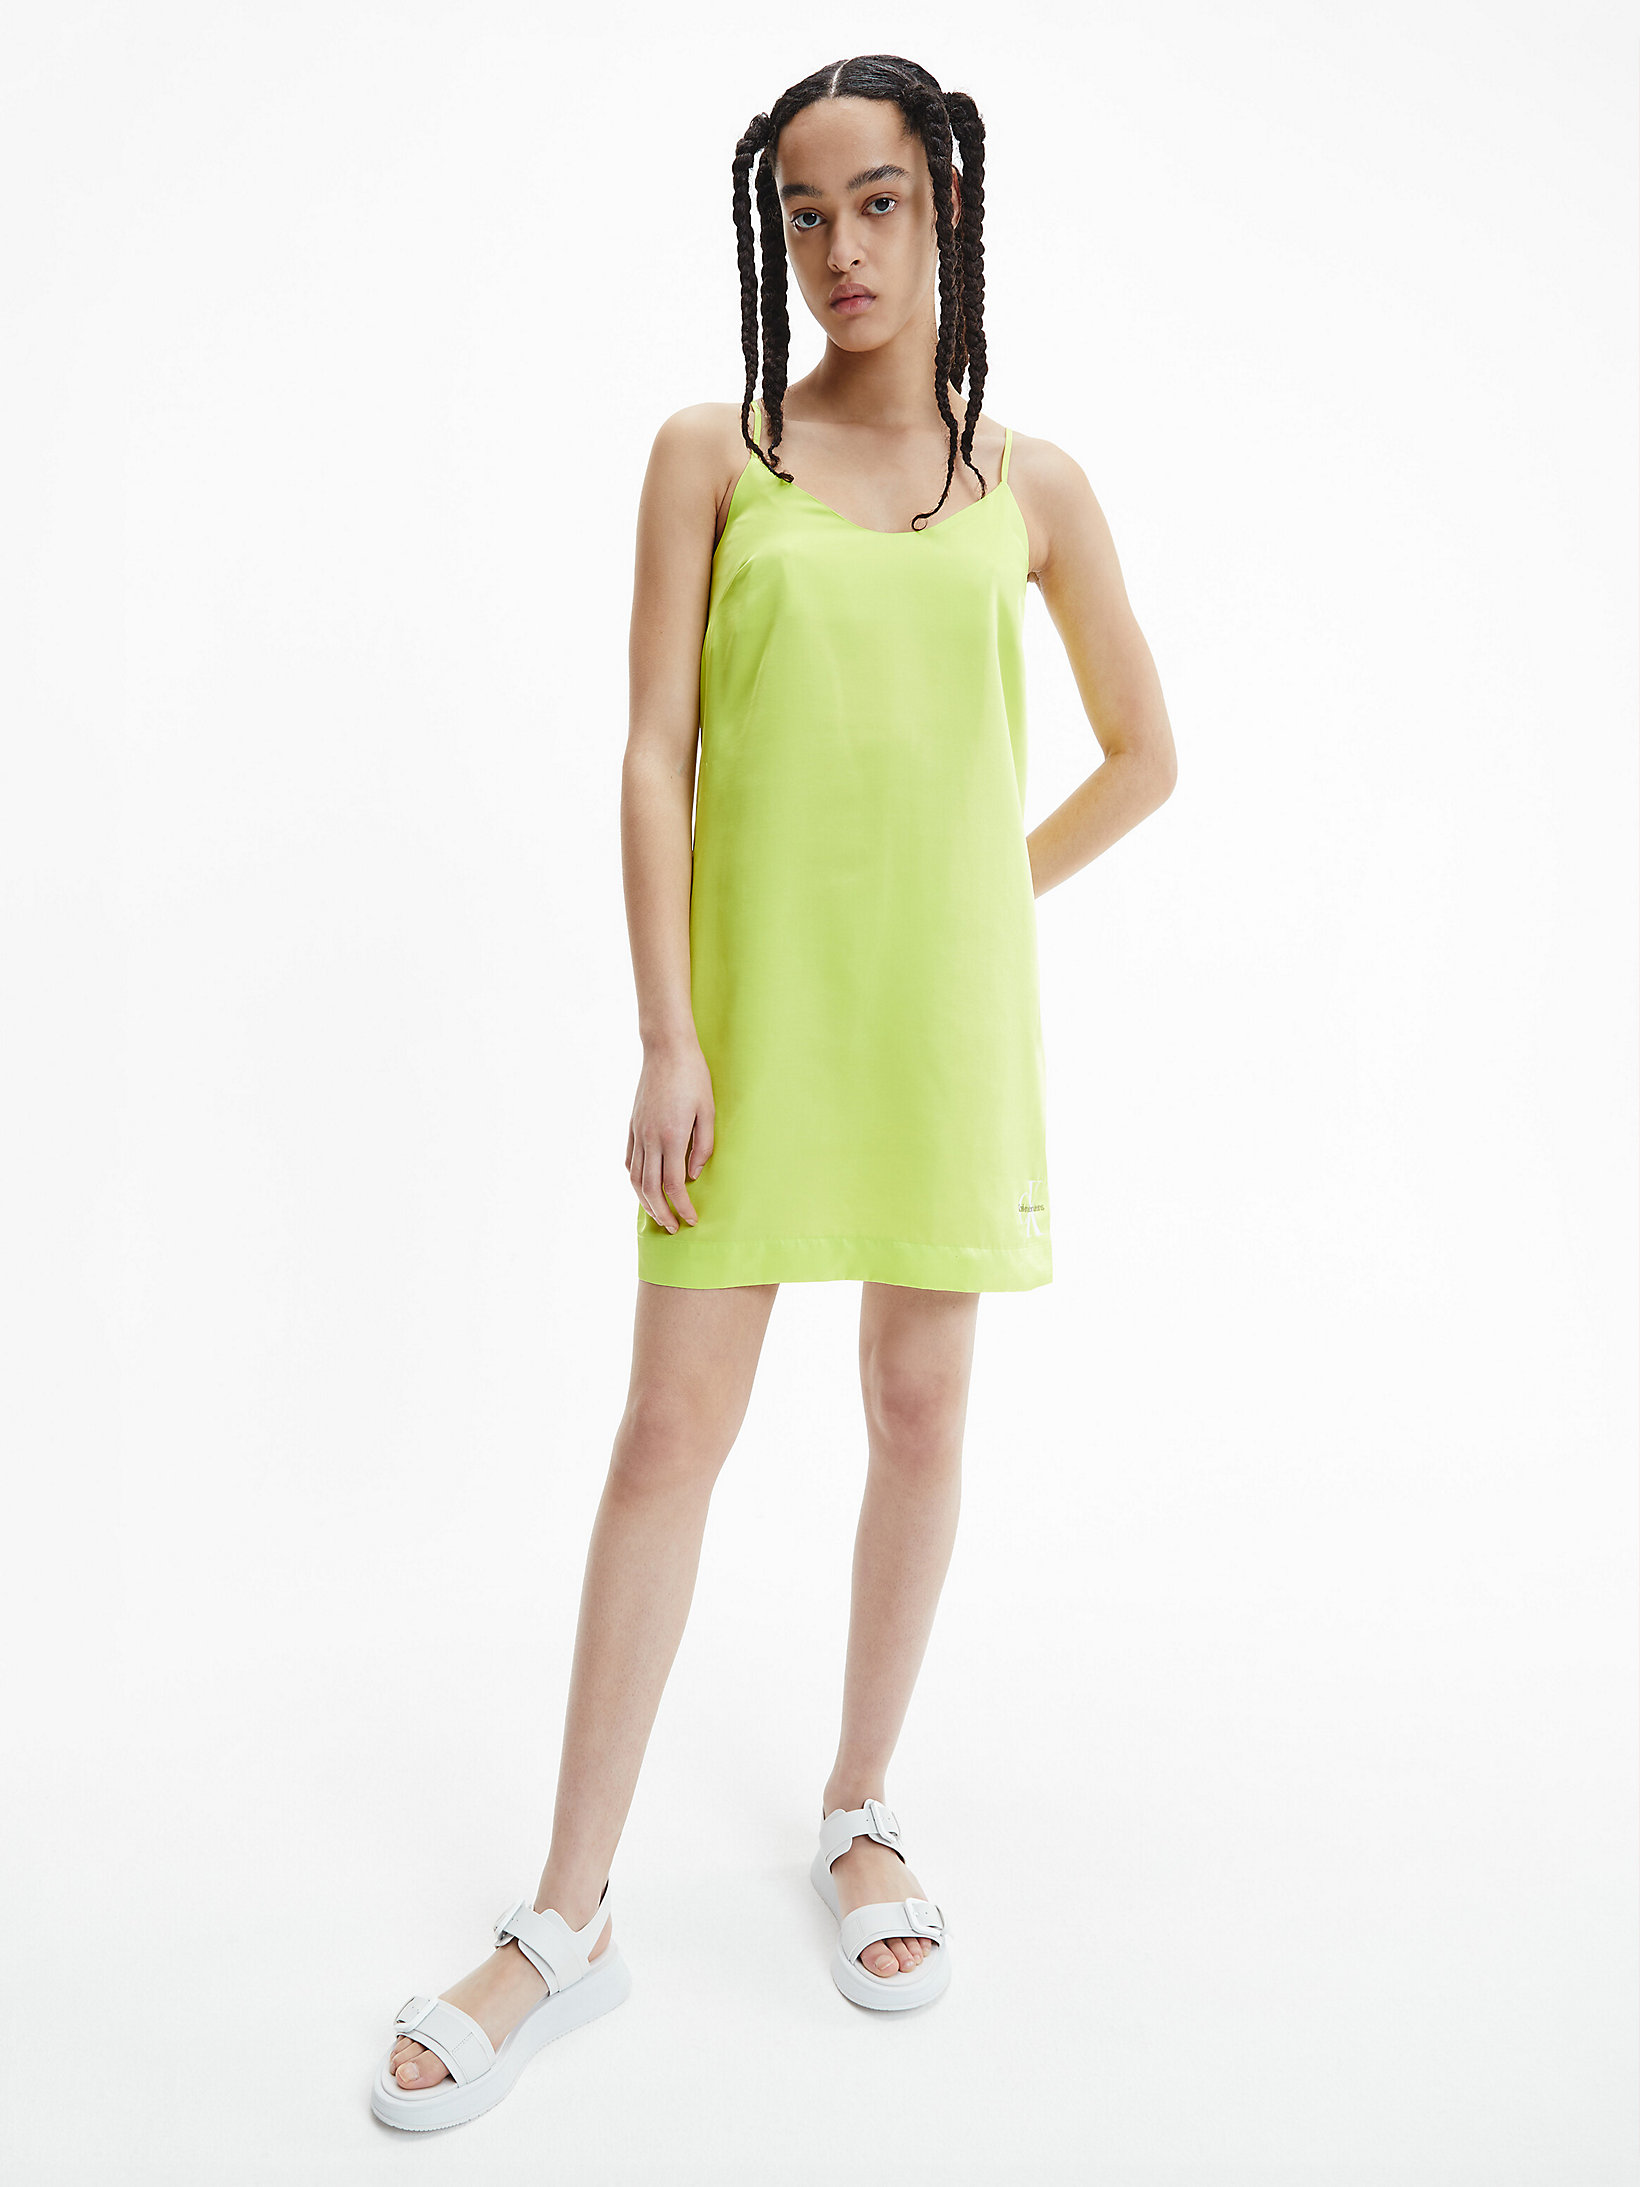 Lemon Lime Monogram Satin Slip Dress undefined women Calvin Klein